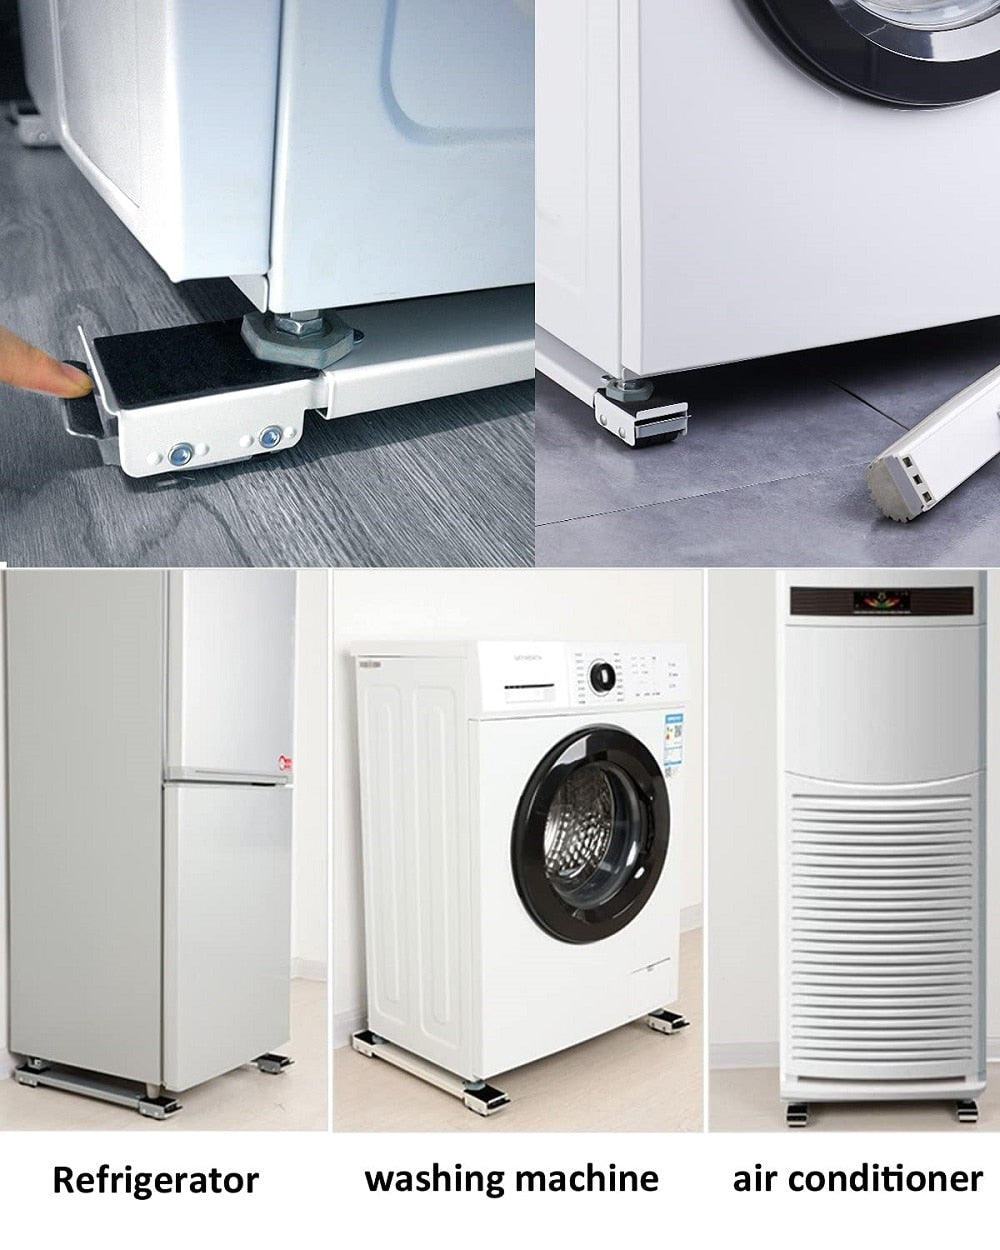 Washing Machine Stand Refrigerator Raised Base Dryer Holder Home Appliance Mobile Shelf Organizer Bathroom Kitchen Accessories